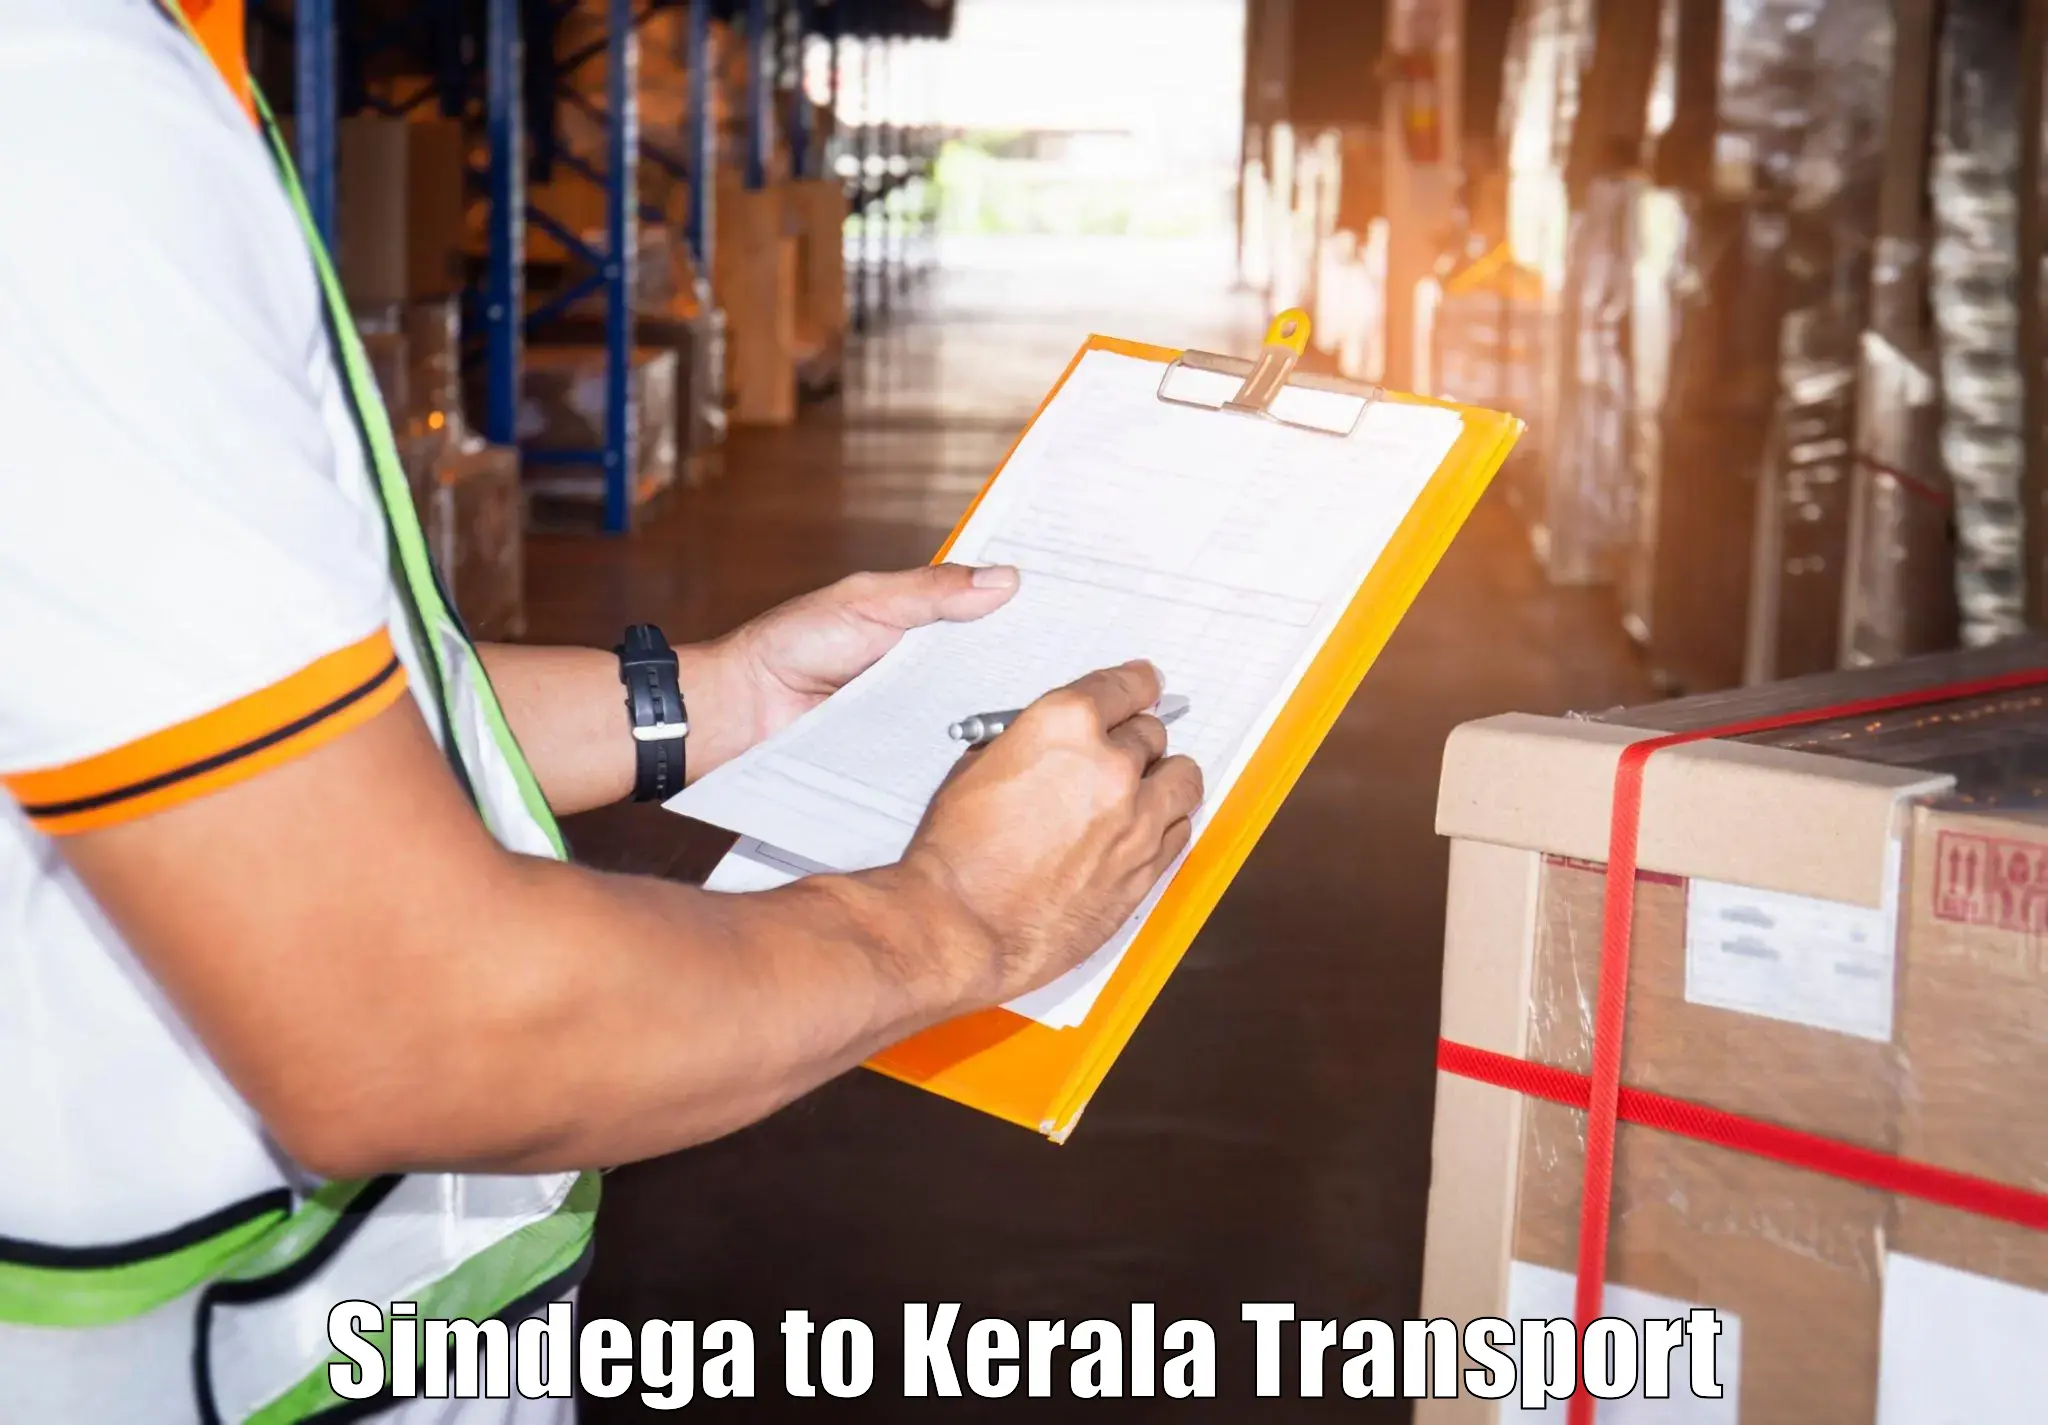 Transport in sharing Simdega to Ernakulam